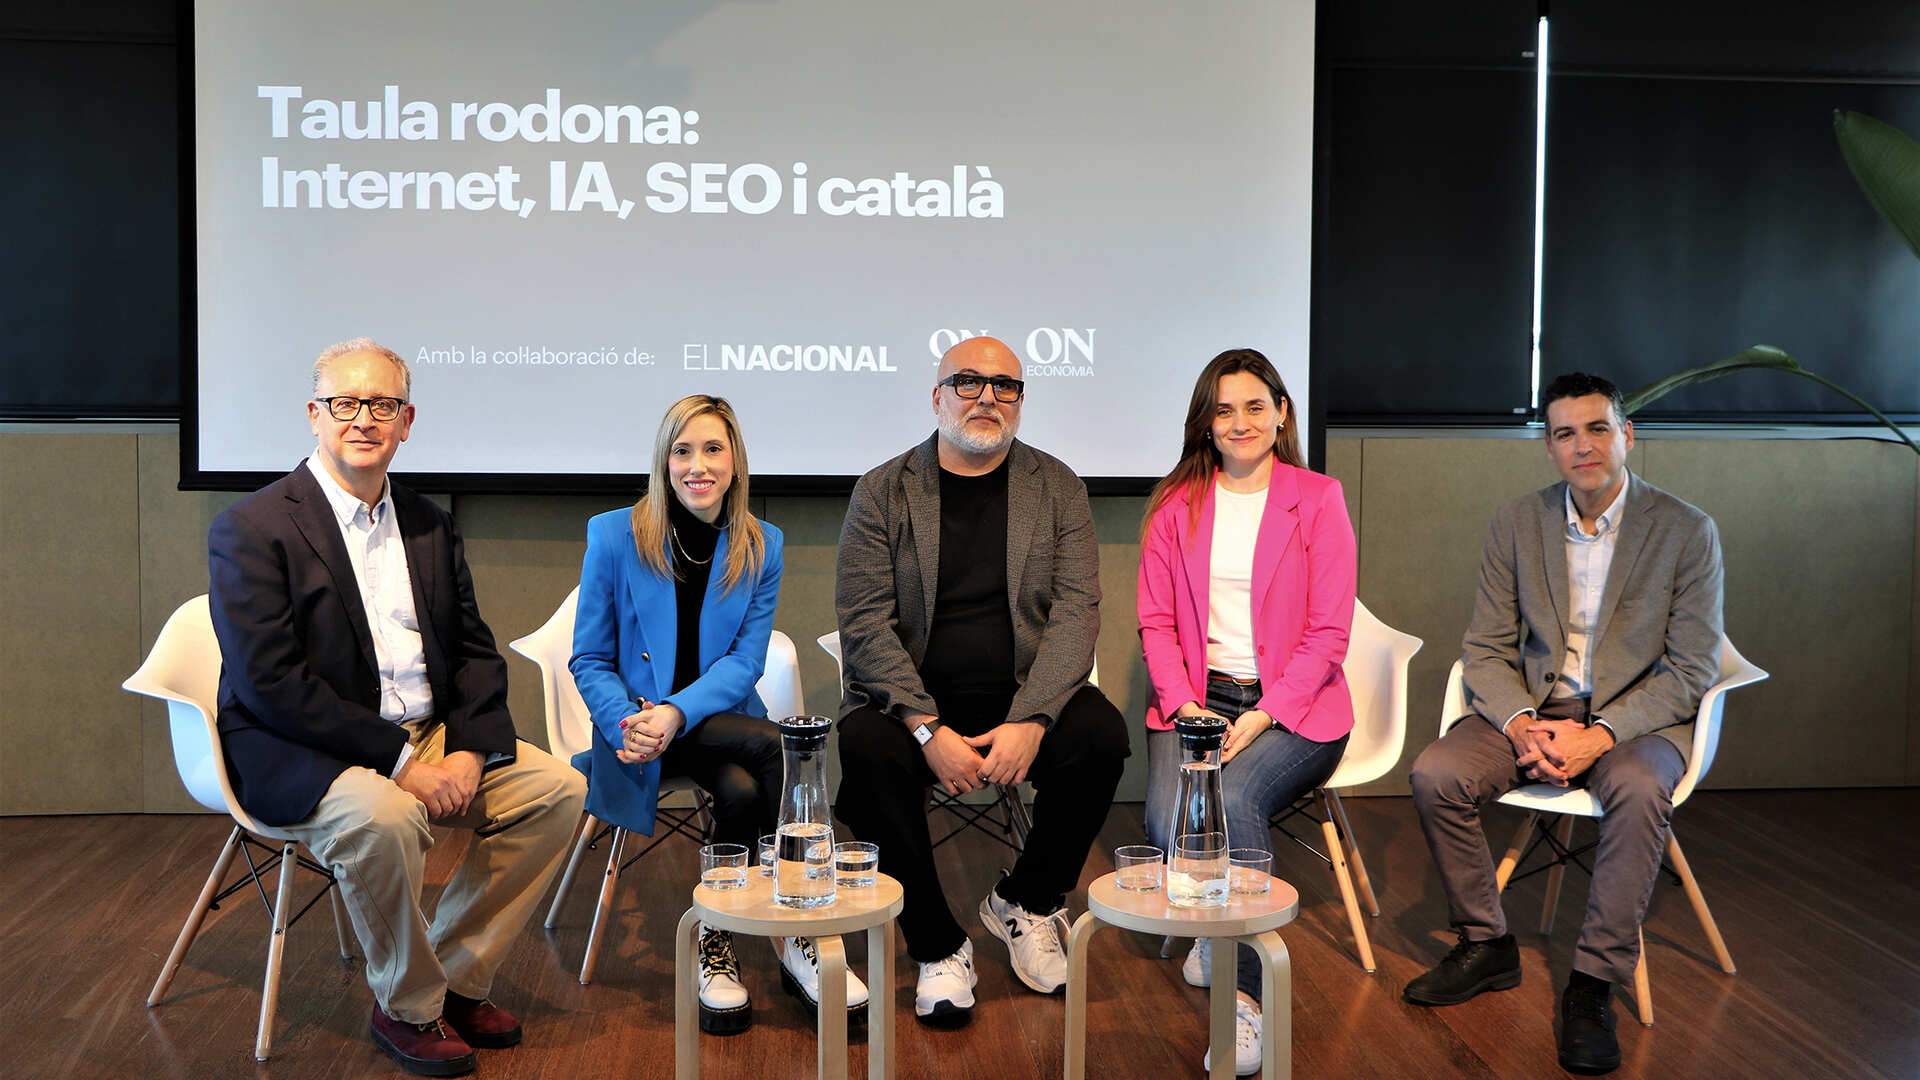 La comunidad SEO en catalán se organiza para crear una asociación y potenciar la visibilidad de la lengua